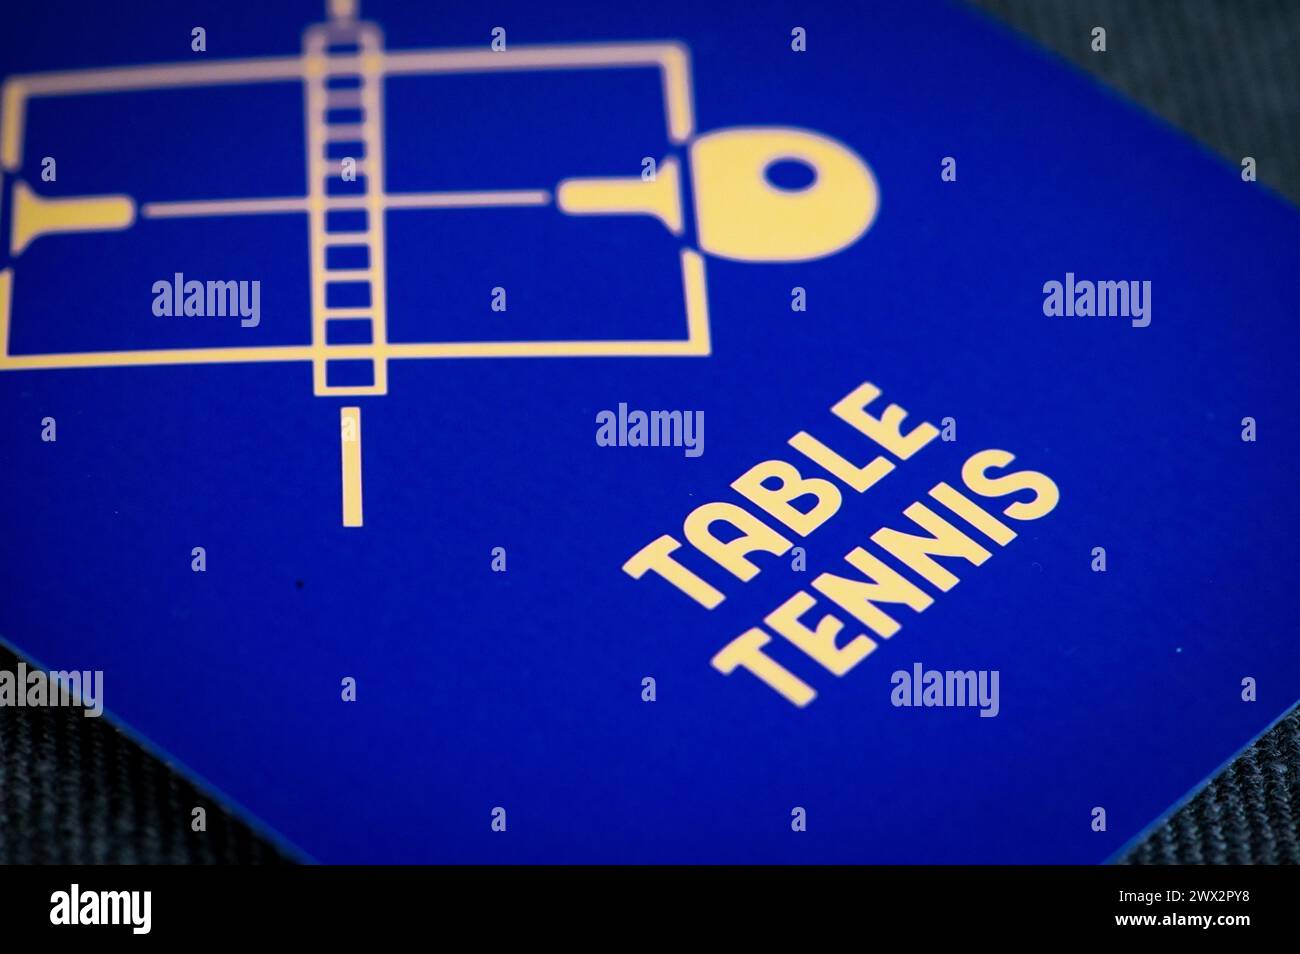 Pictograma de tenis de mesa para los juegos olímpicos de verano de parís 2024. Icono oficial del deporte en los juegos olímpicos en París 24 Foto de stock